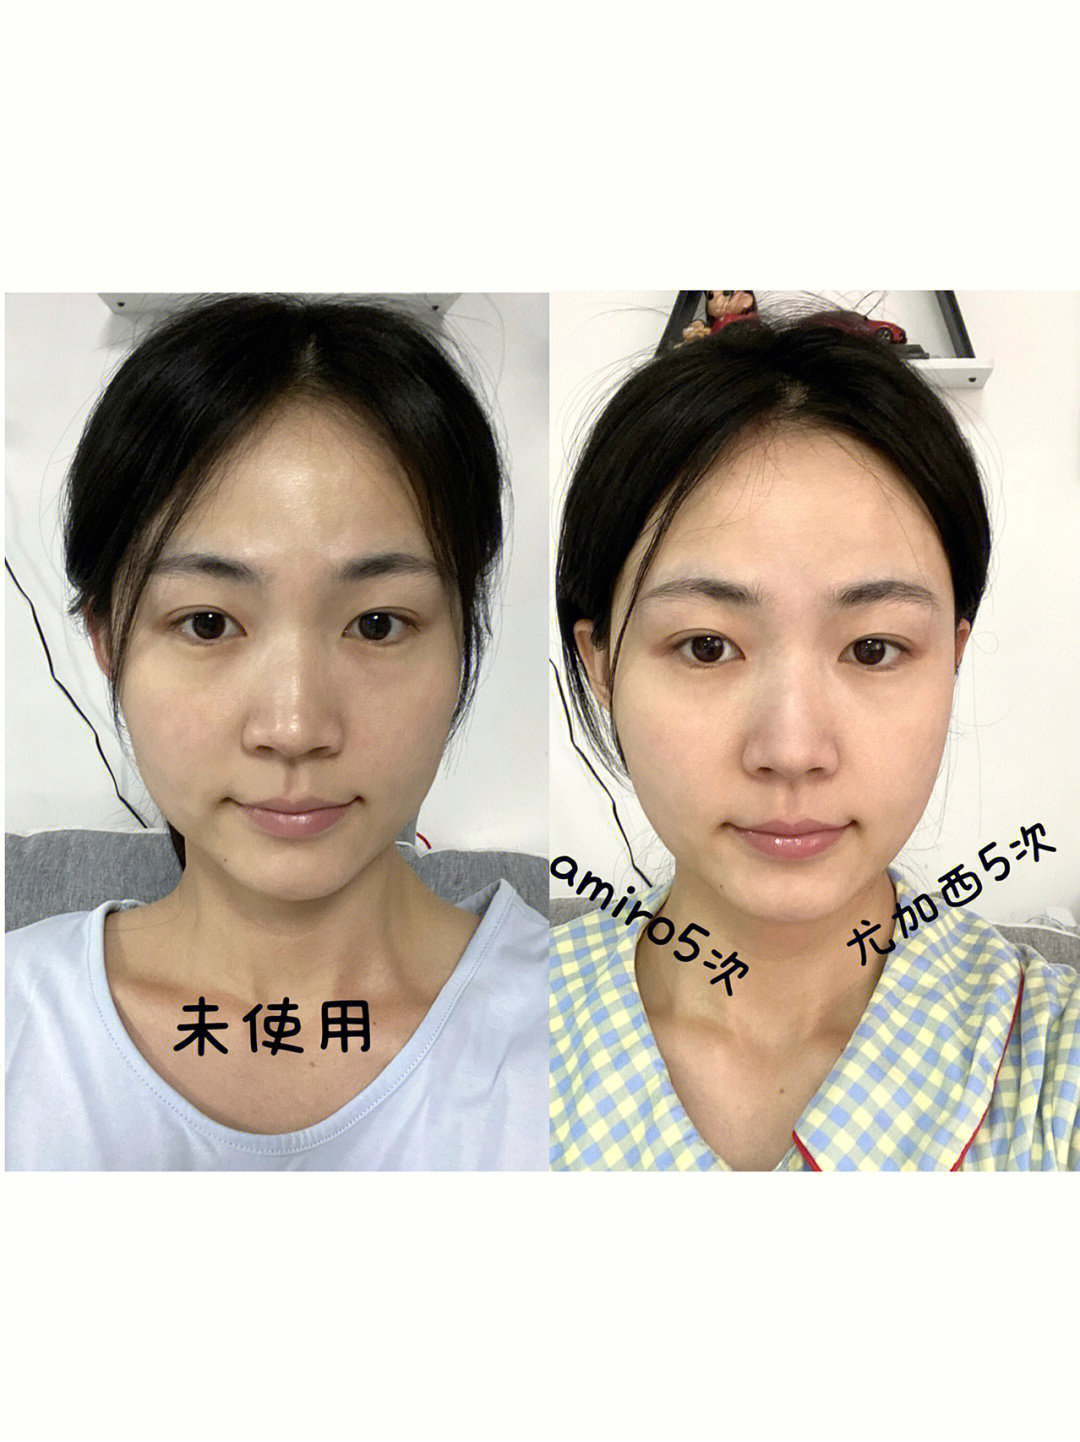 amiro尤加西美容仪10天使用对比有效果吗